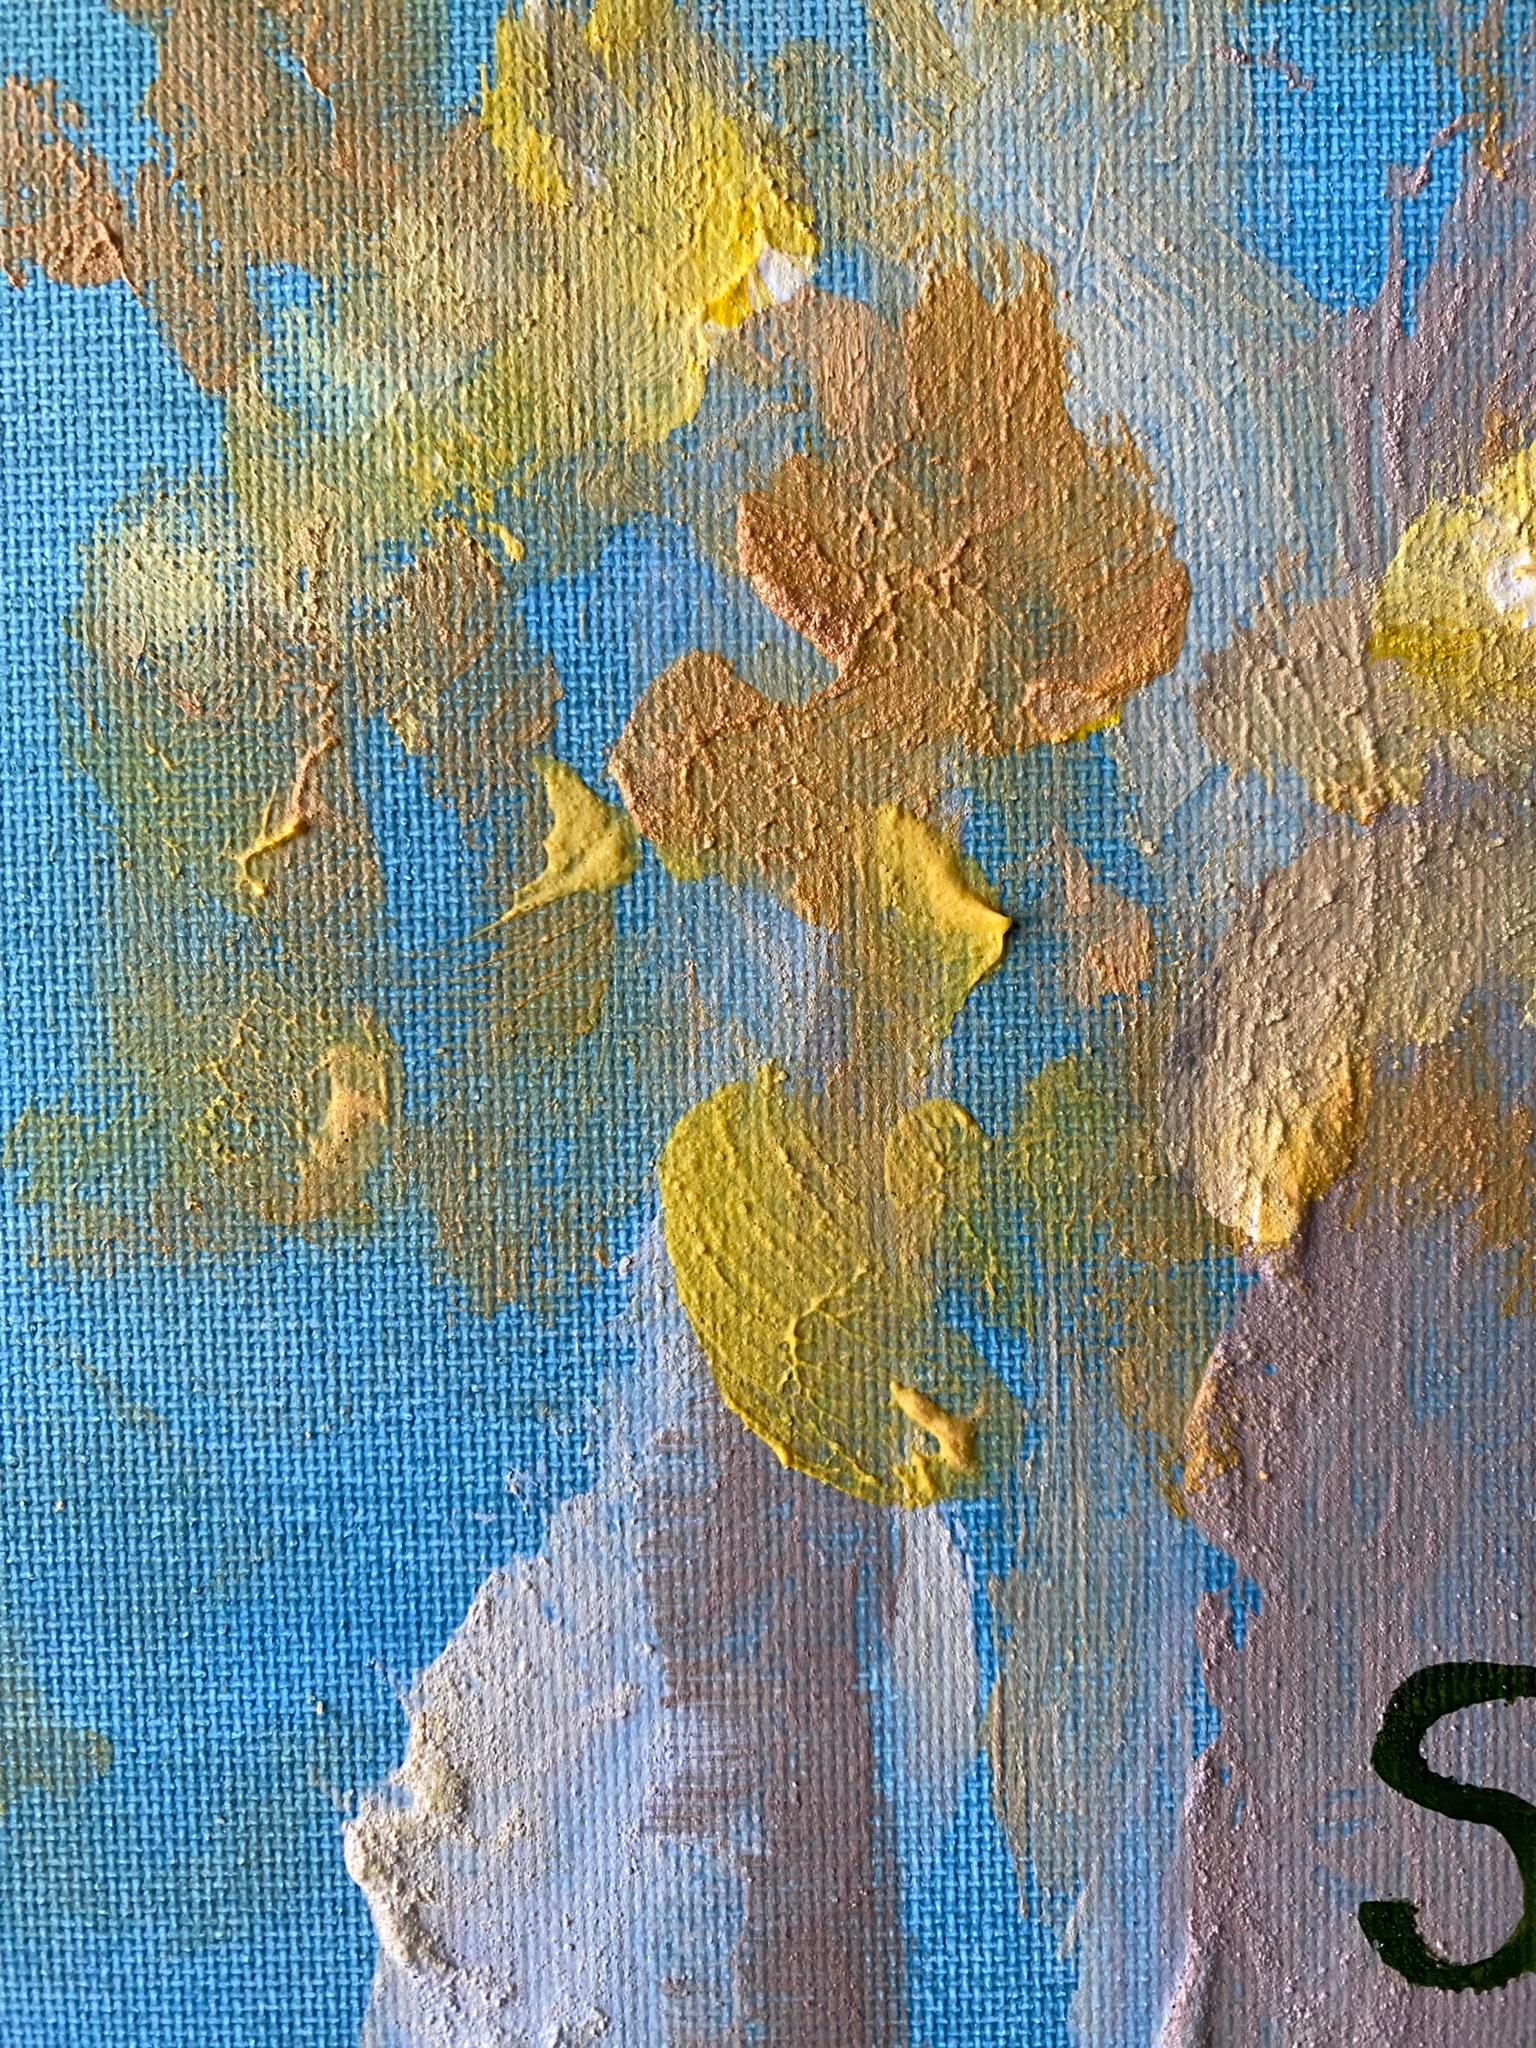 Original-Magnolias-Memory Landscape-UK Awarded Artist-oil on canvas board-Spring For Sale 11